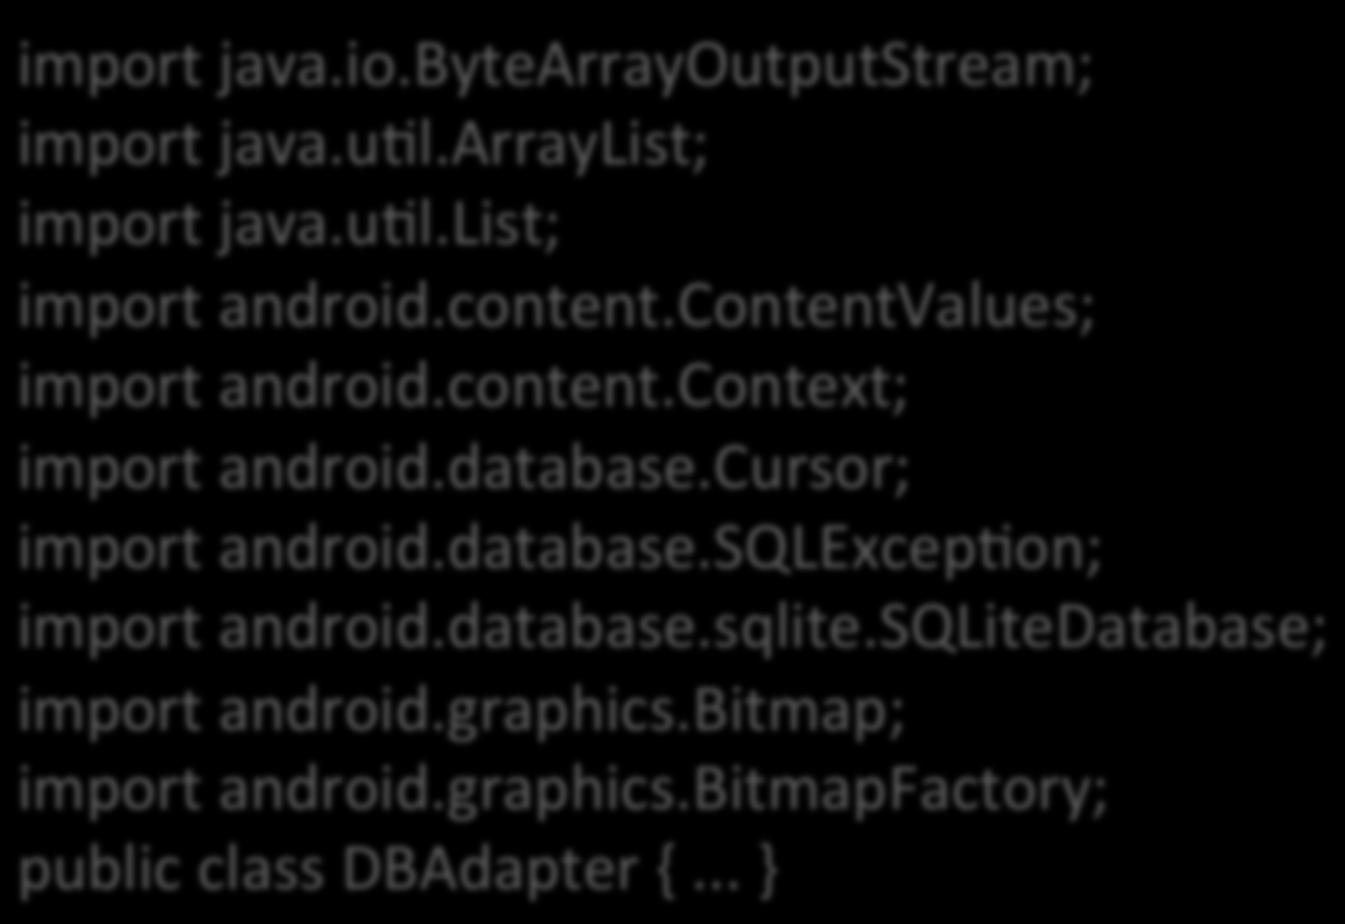 Passo- a- Passo 6) Criar a classe DBAdpter para concentrar o trabalho com o banco de dados import java.io.bytearrayoutputstream; import java.ual.arraylist; import java.ual.list; import android.